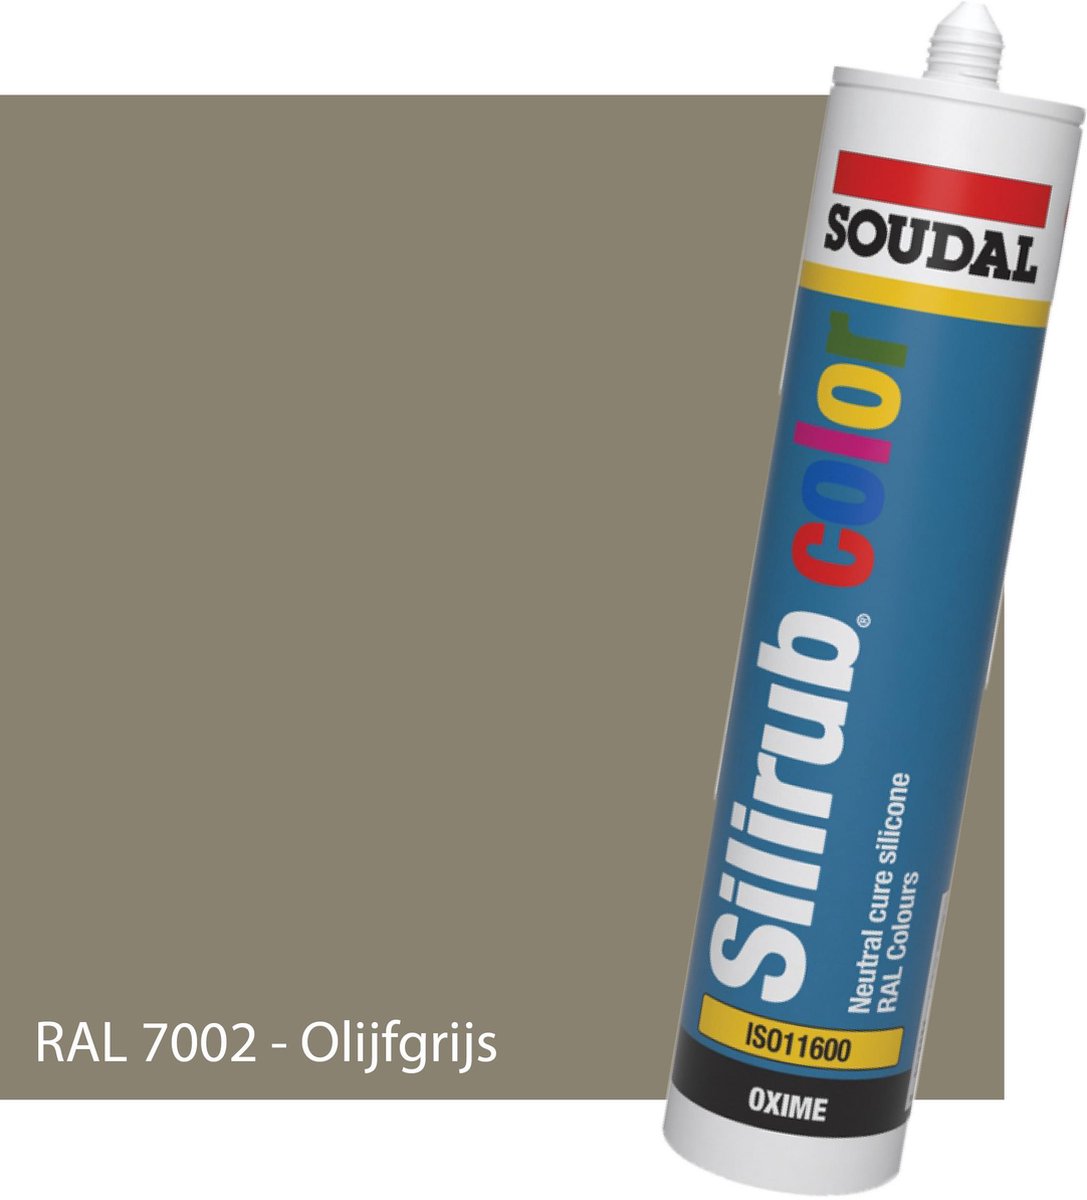 Siliconenkit Sanitair - Soudal - Keuken - Voor binnen & buiten - RAL 7002 Olijfgrijs - 300ml koker